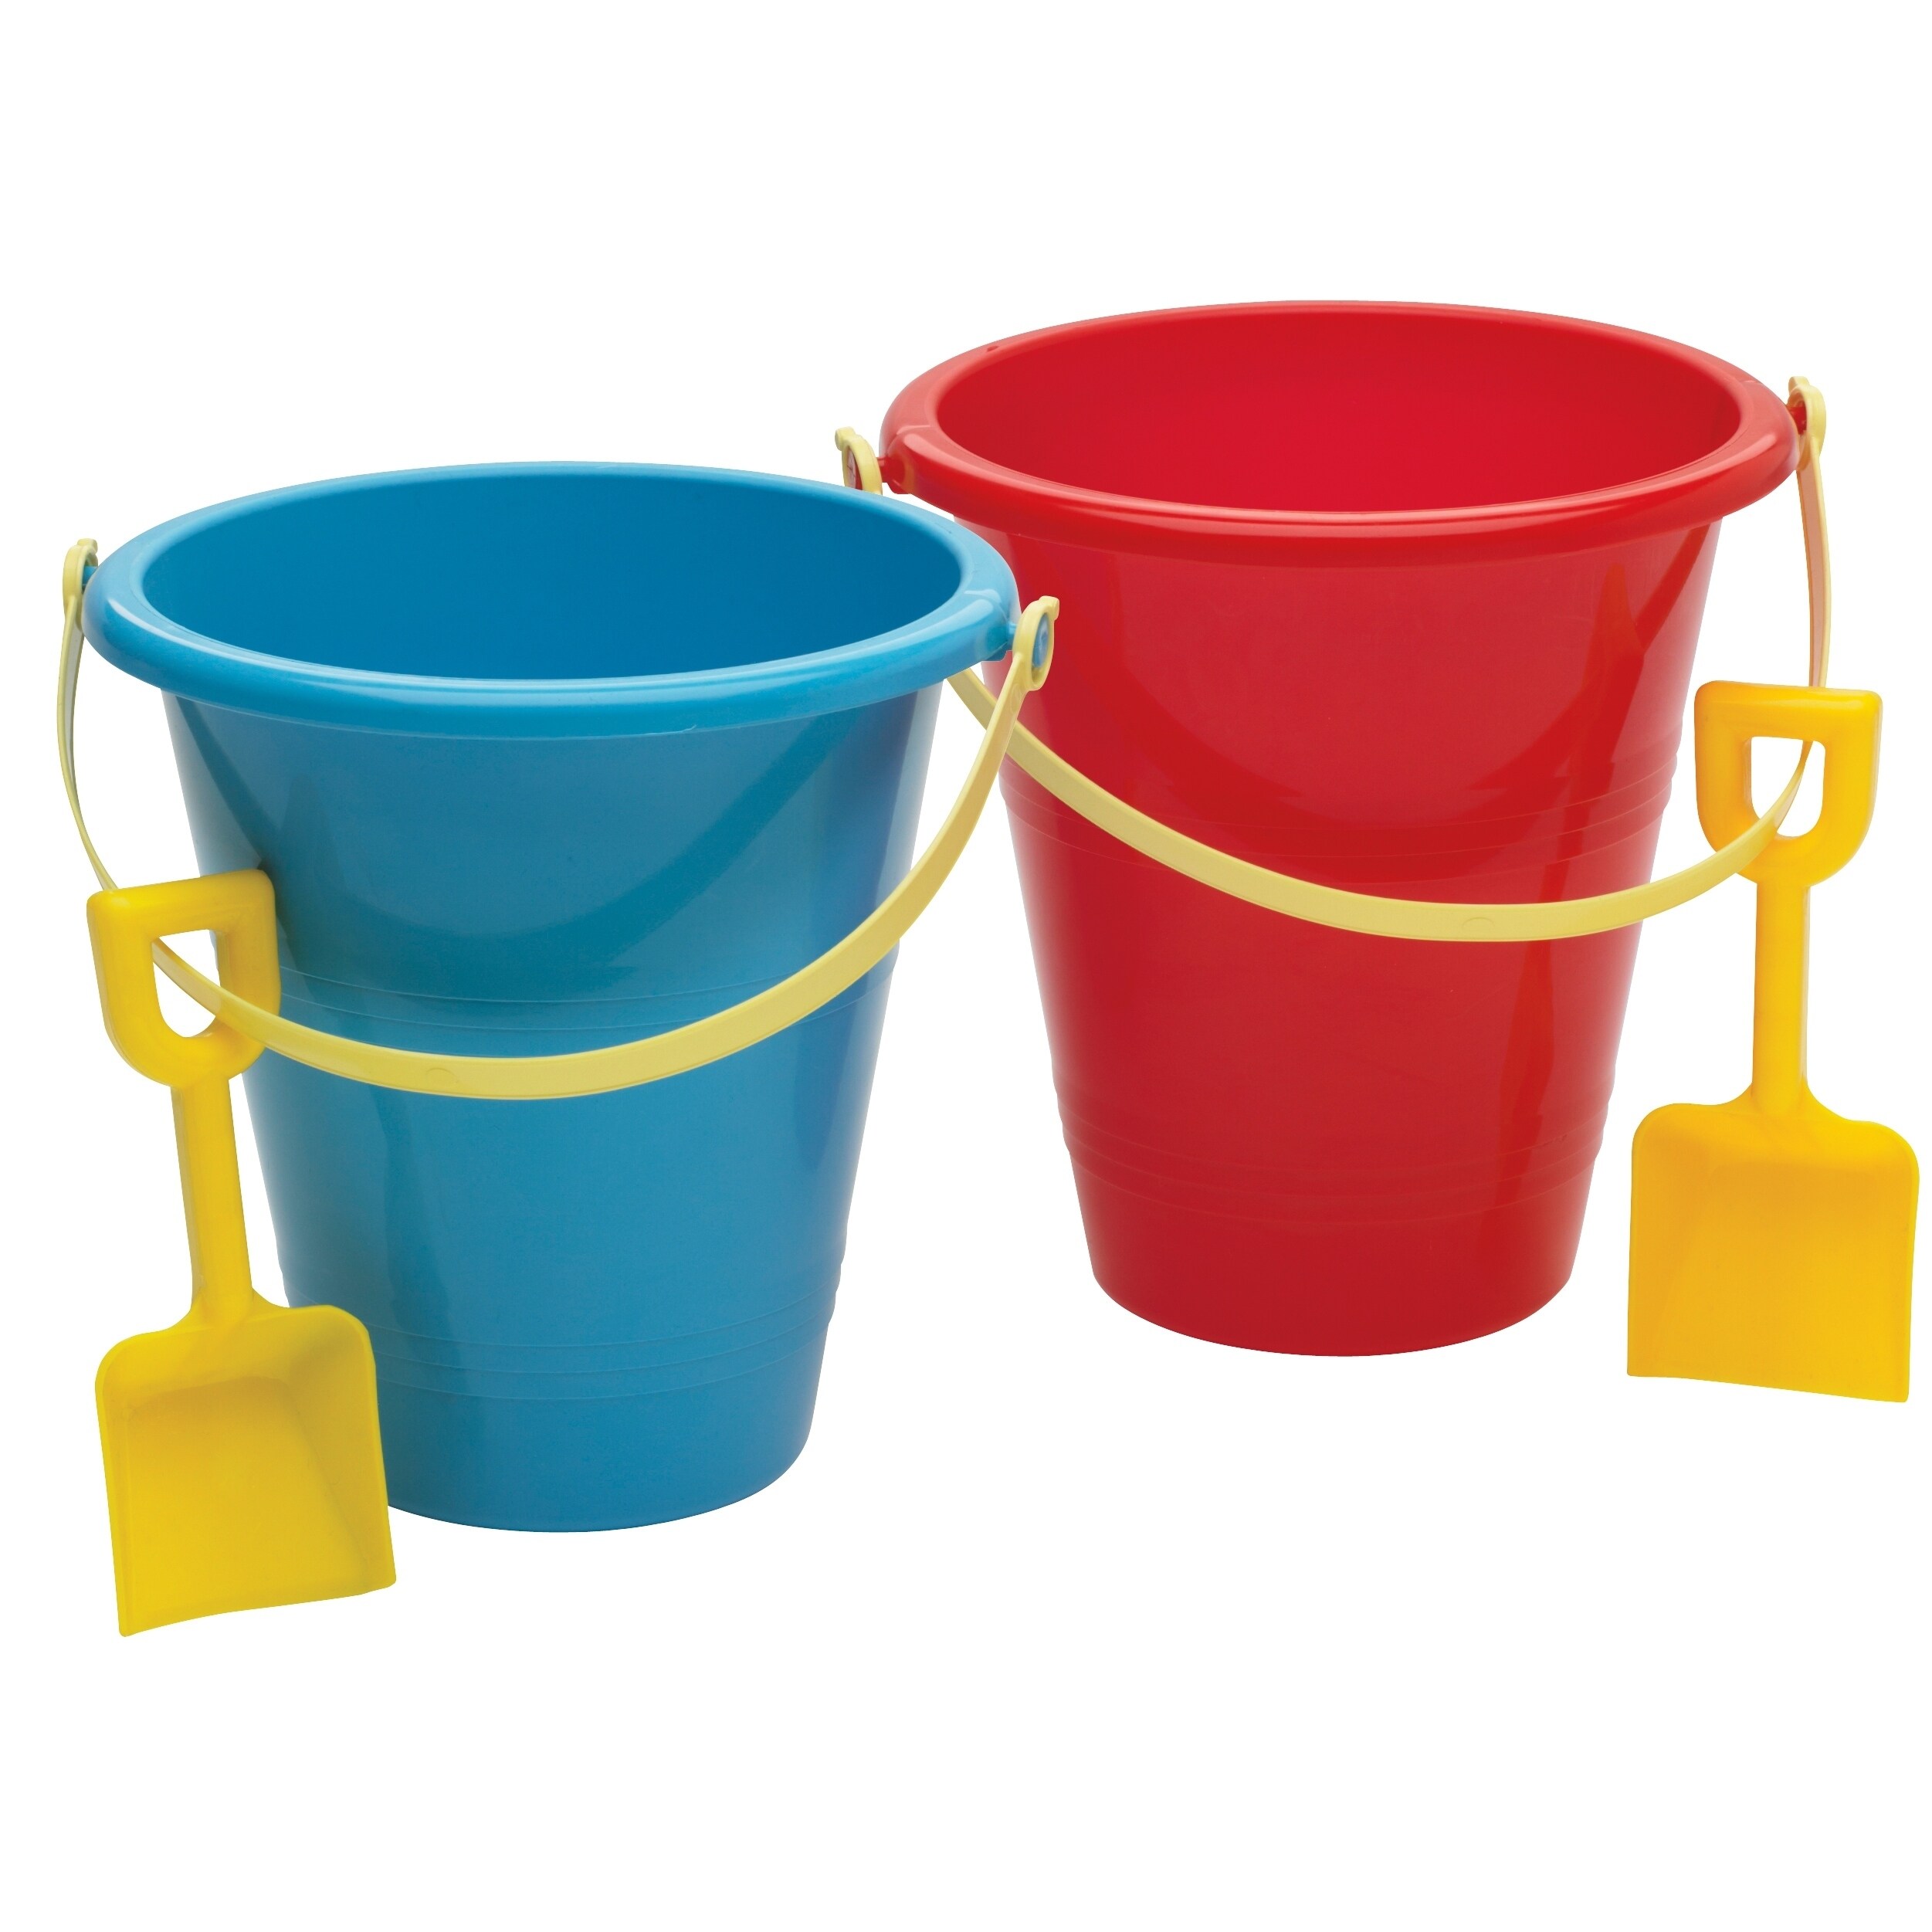 pail and shovel set